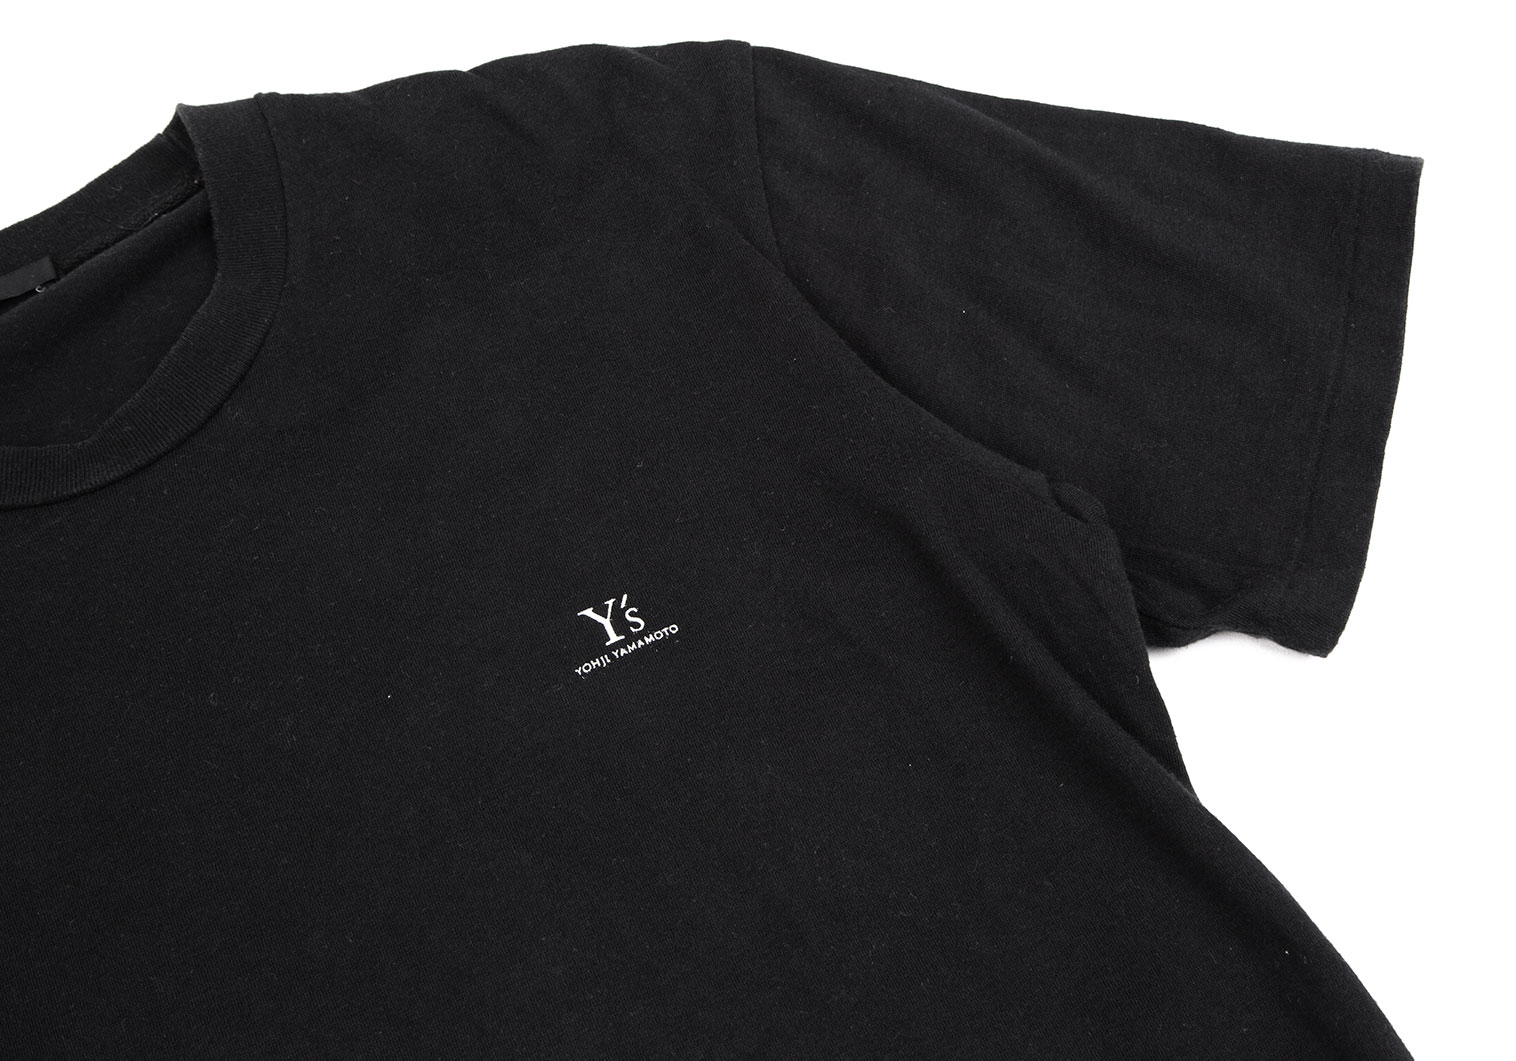 ワイズY's ワンポイントロゴプリントTシャツ 黒M位